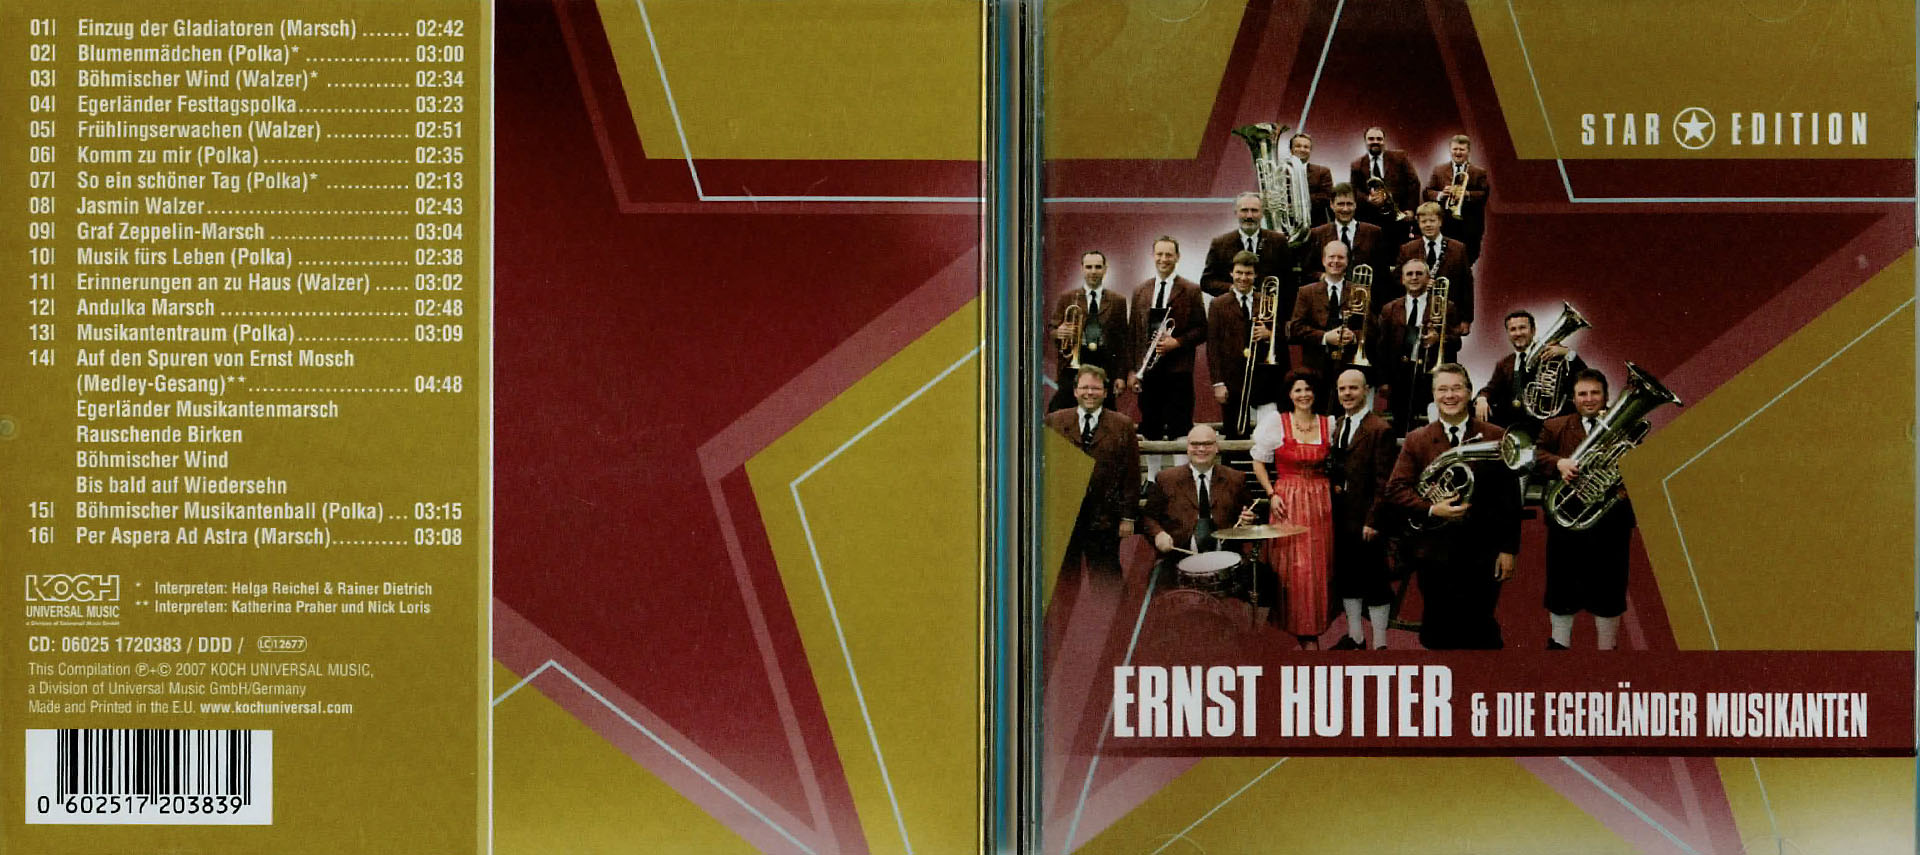 Ernst Hutter & die Egerländer Musikanten - STAR EDITION